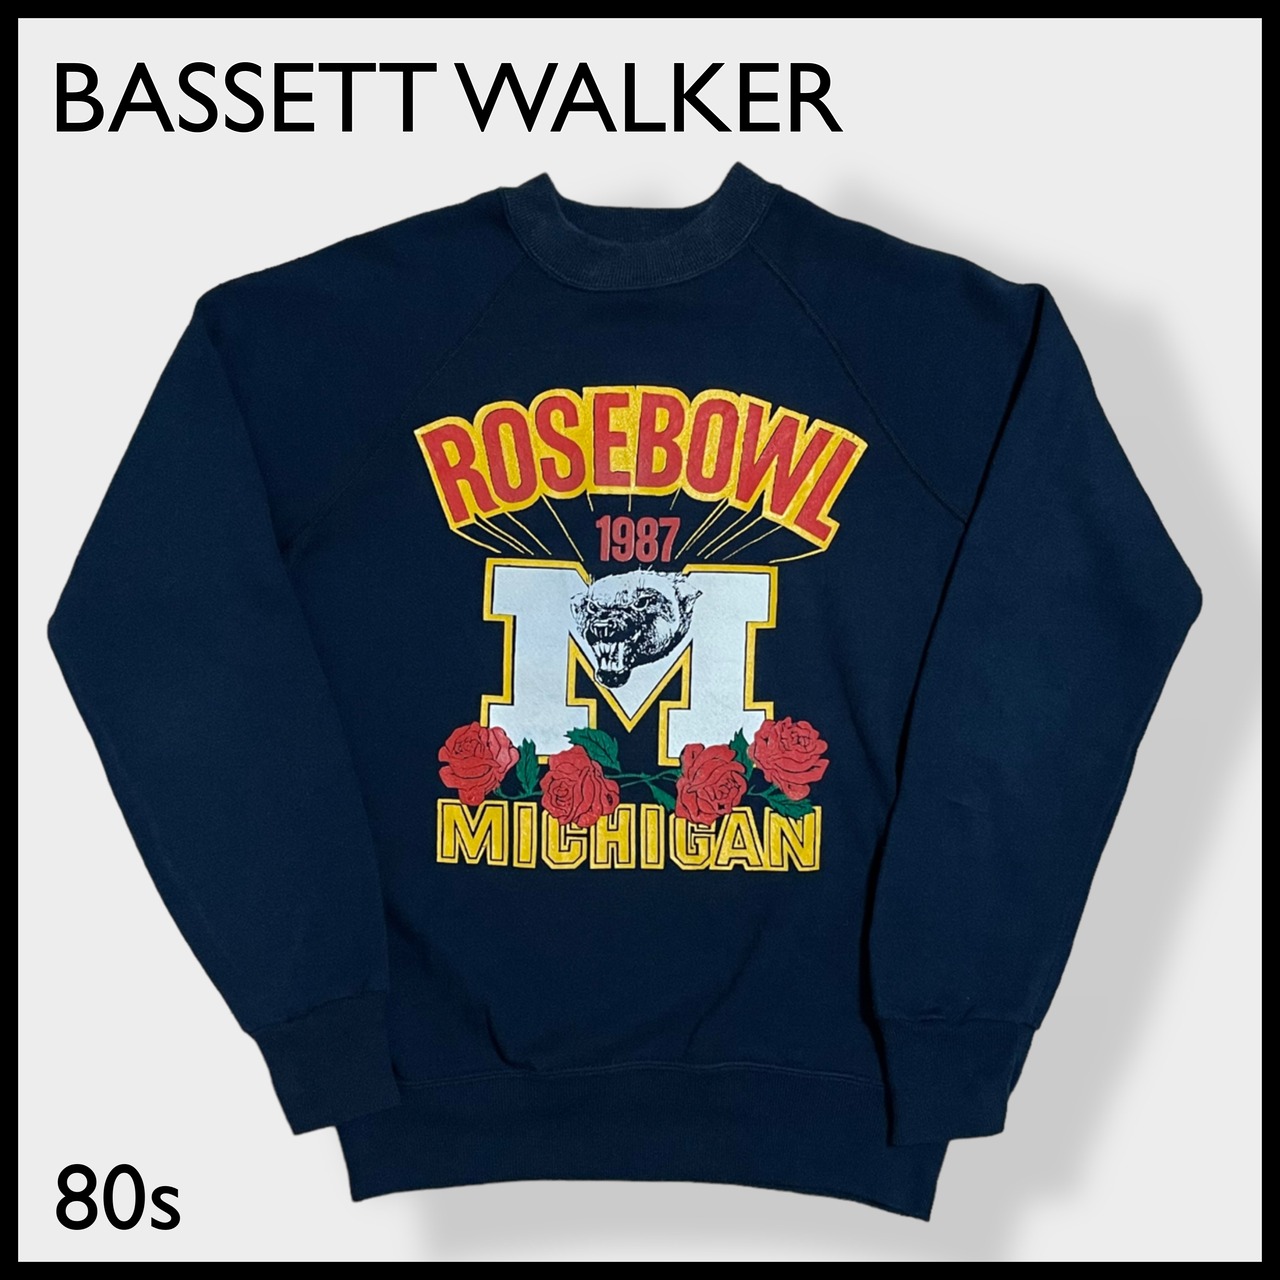 【BASSETT WALKER】80s USA製 カレッジ ミシガン大学 フットボール ローズボウル Michigan プリント アーチロゴ スウェット トレーナー プルオーバー M ラグラン オールド ビンテージ バセットウォーカー US古着